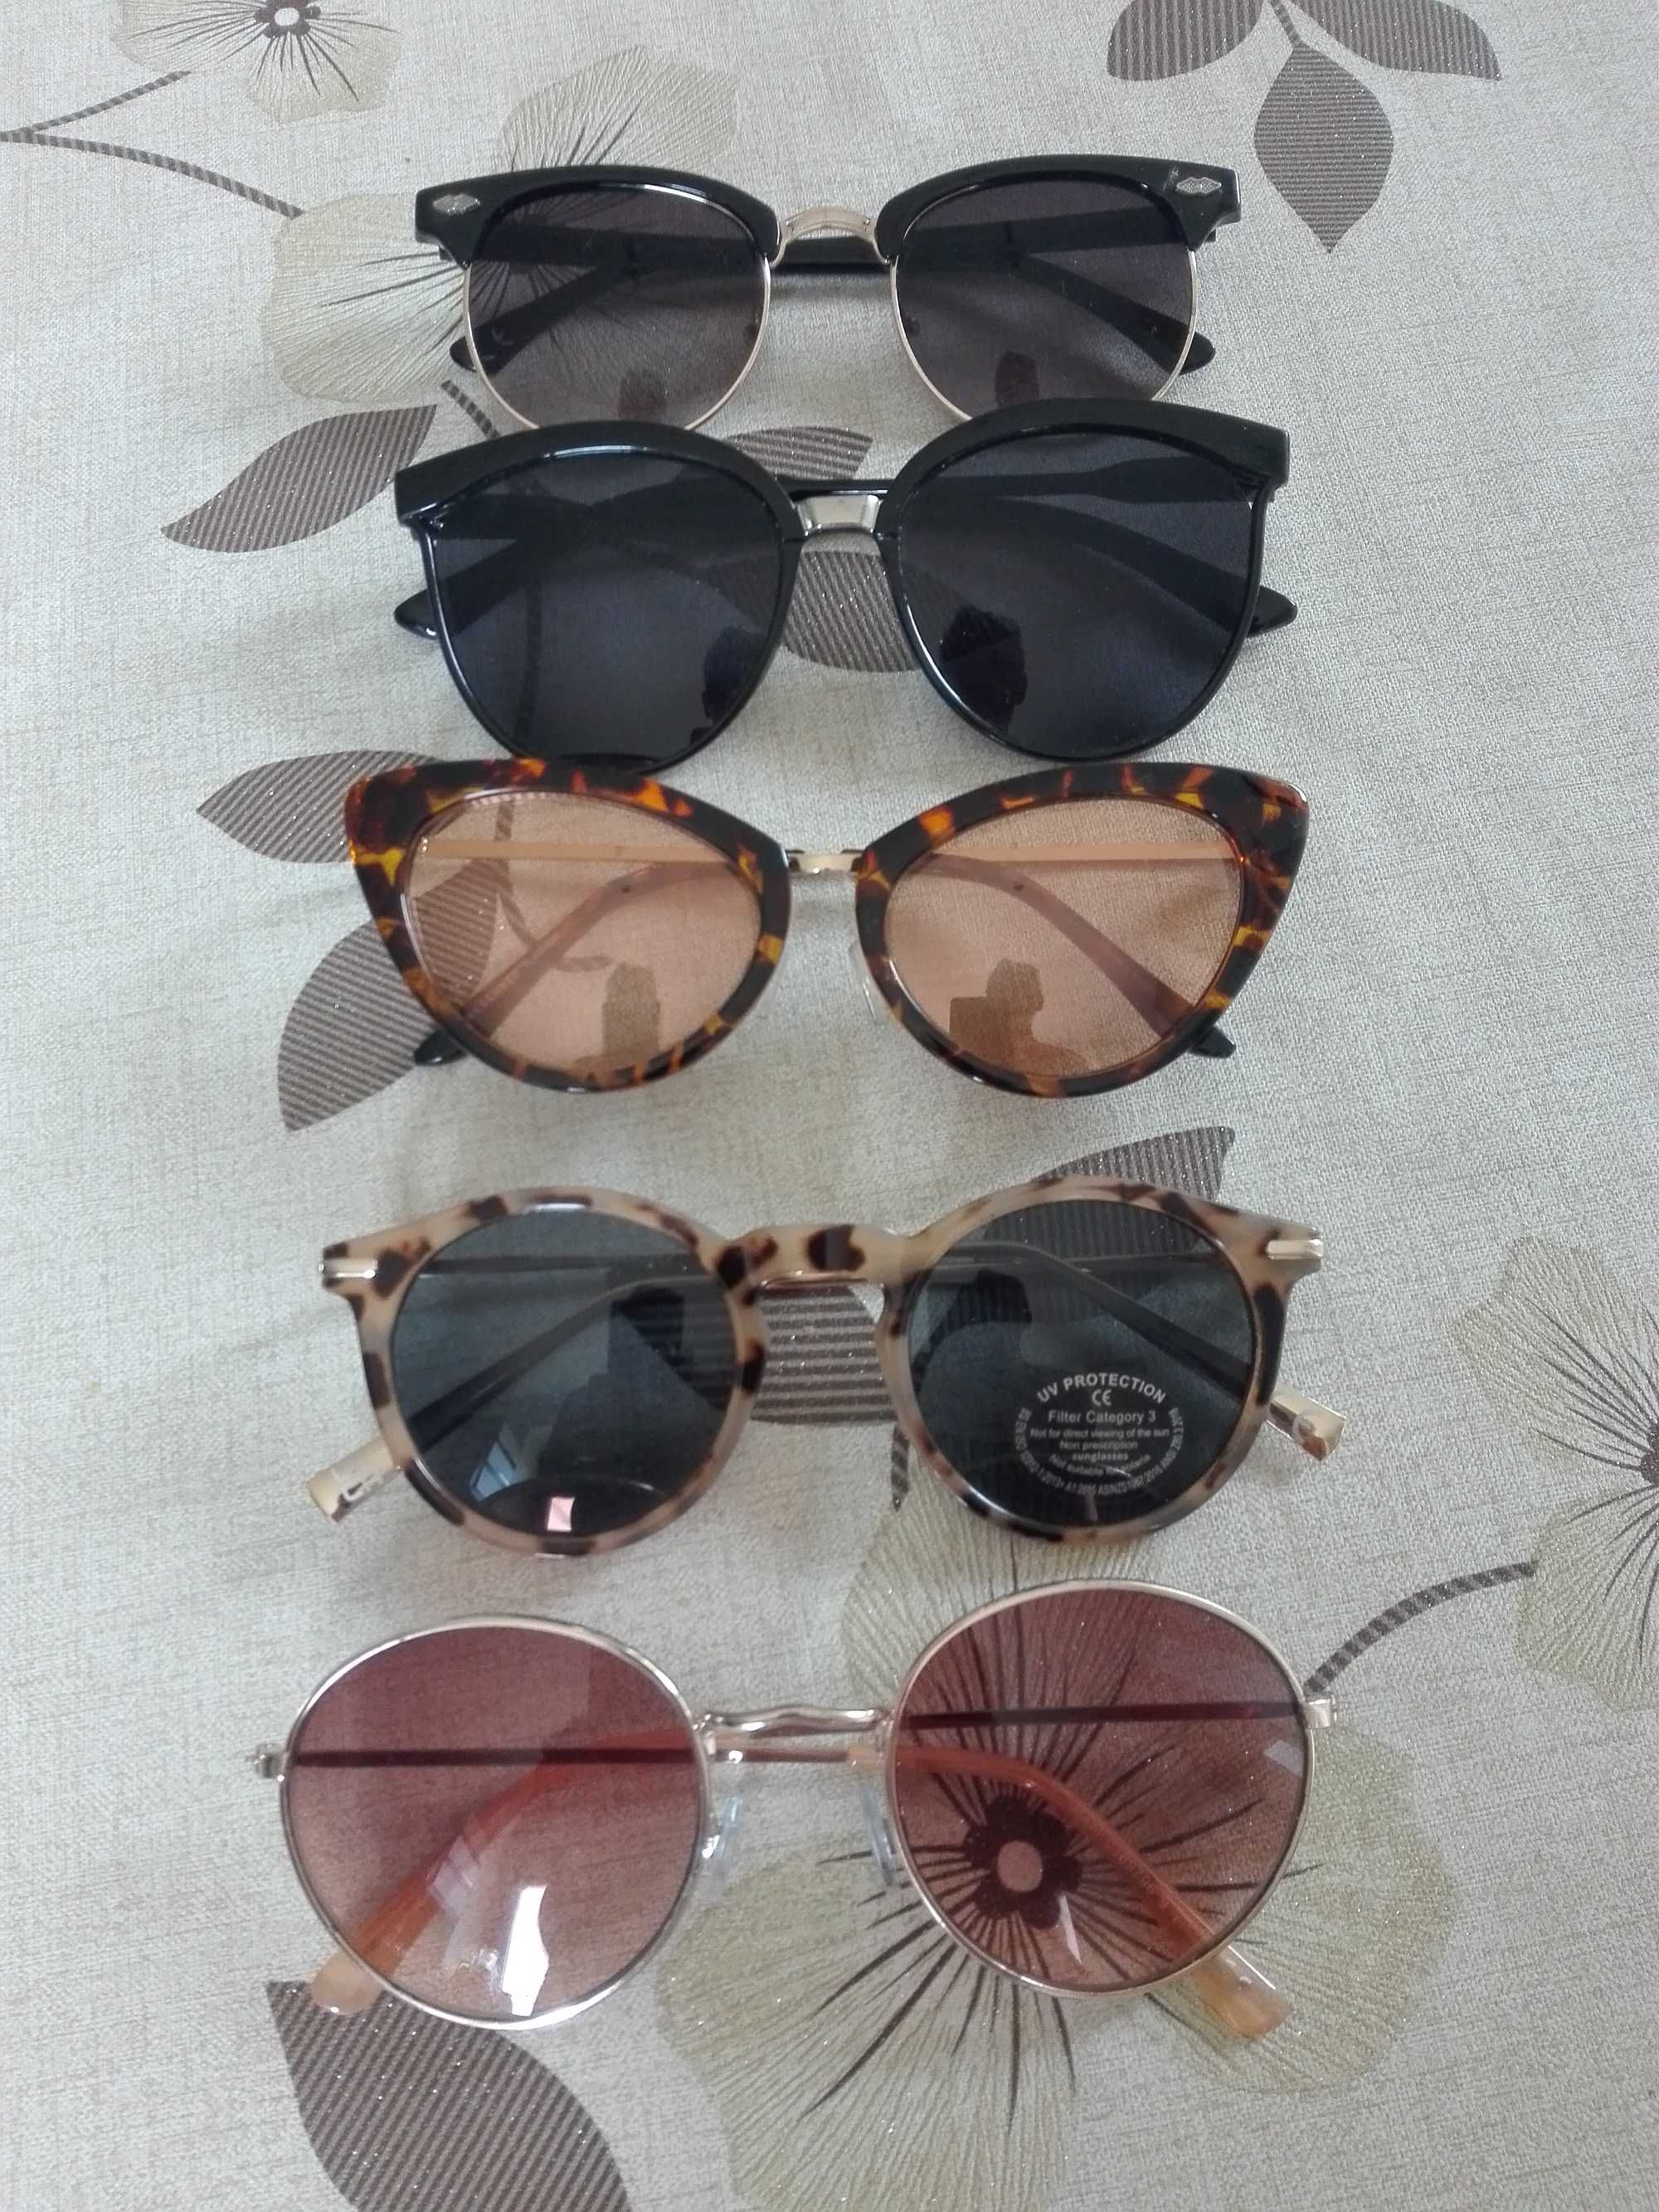 Cztery pary okularów przeciw słonecznych damskch